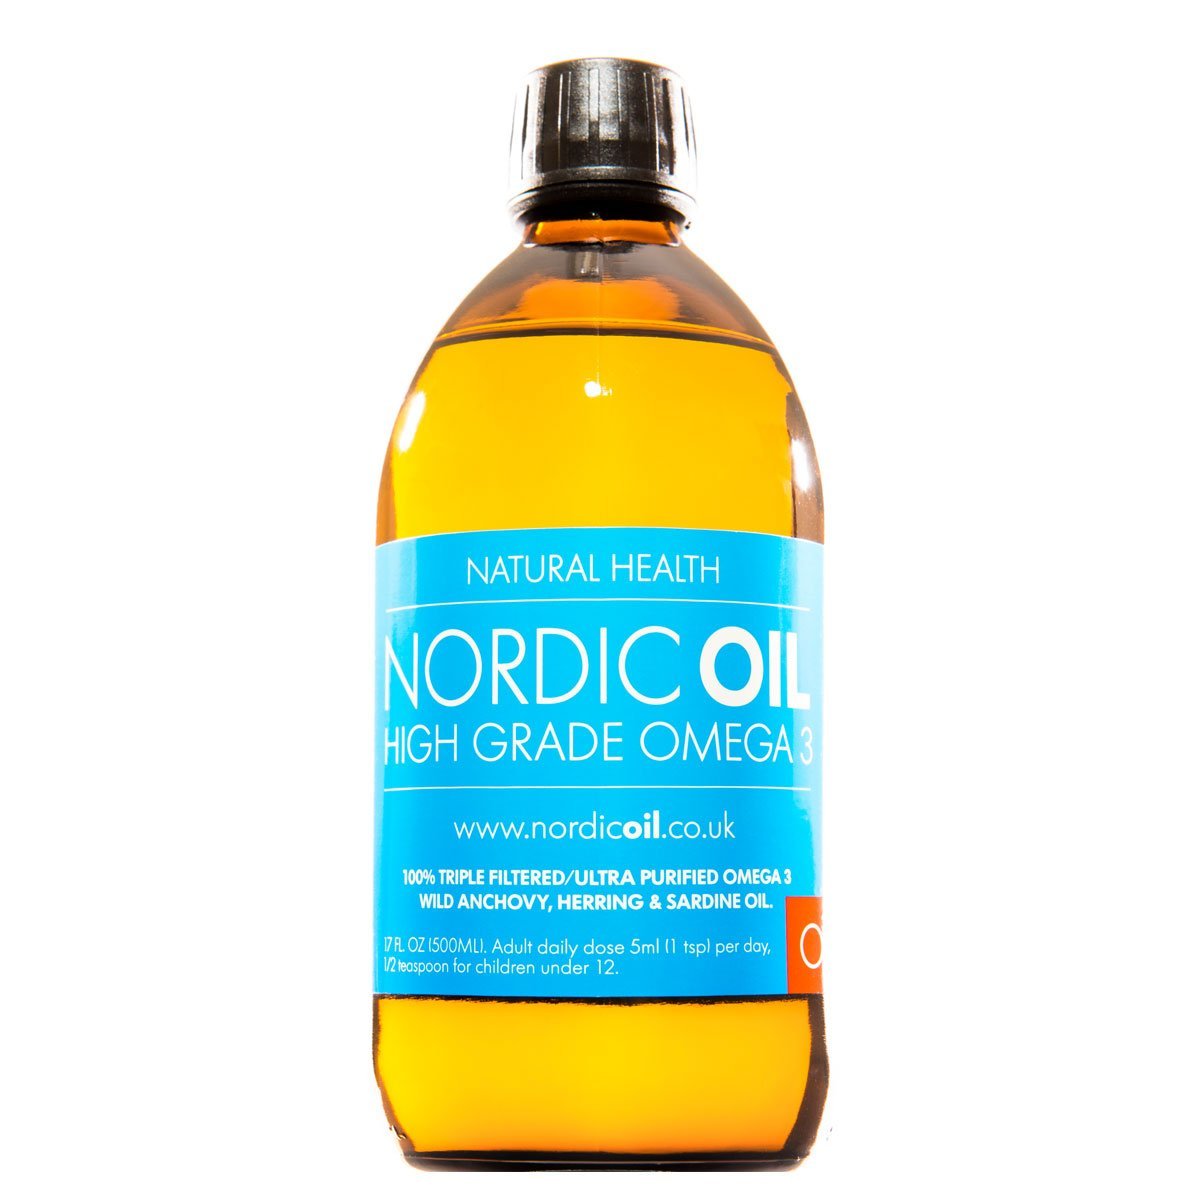 Nordic Oil High Strength 500ml Omega 3 Fish Oil. Lemon Flavoured